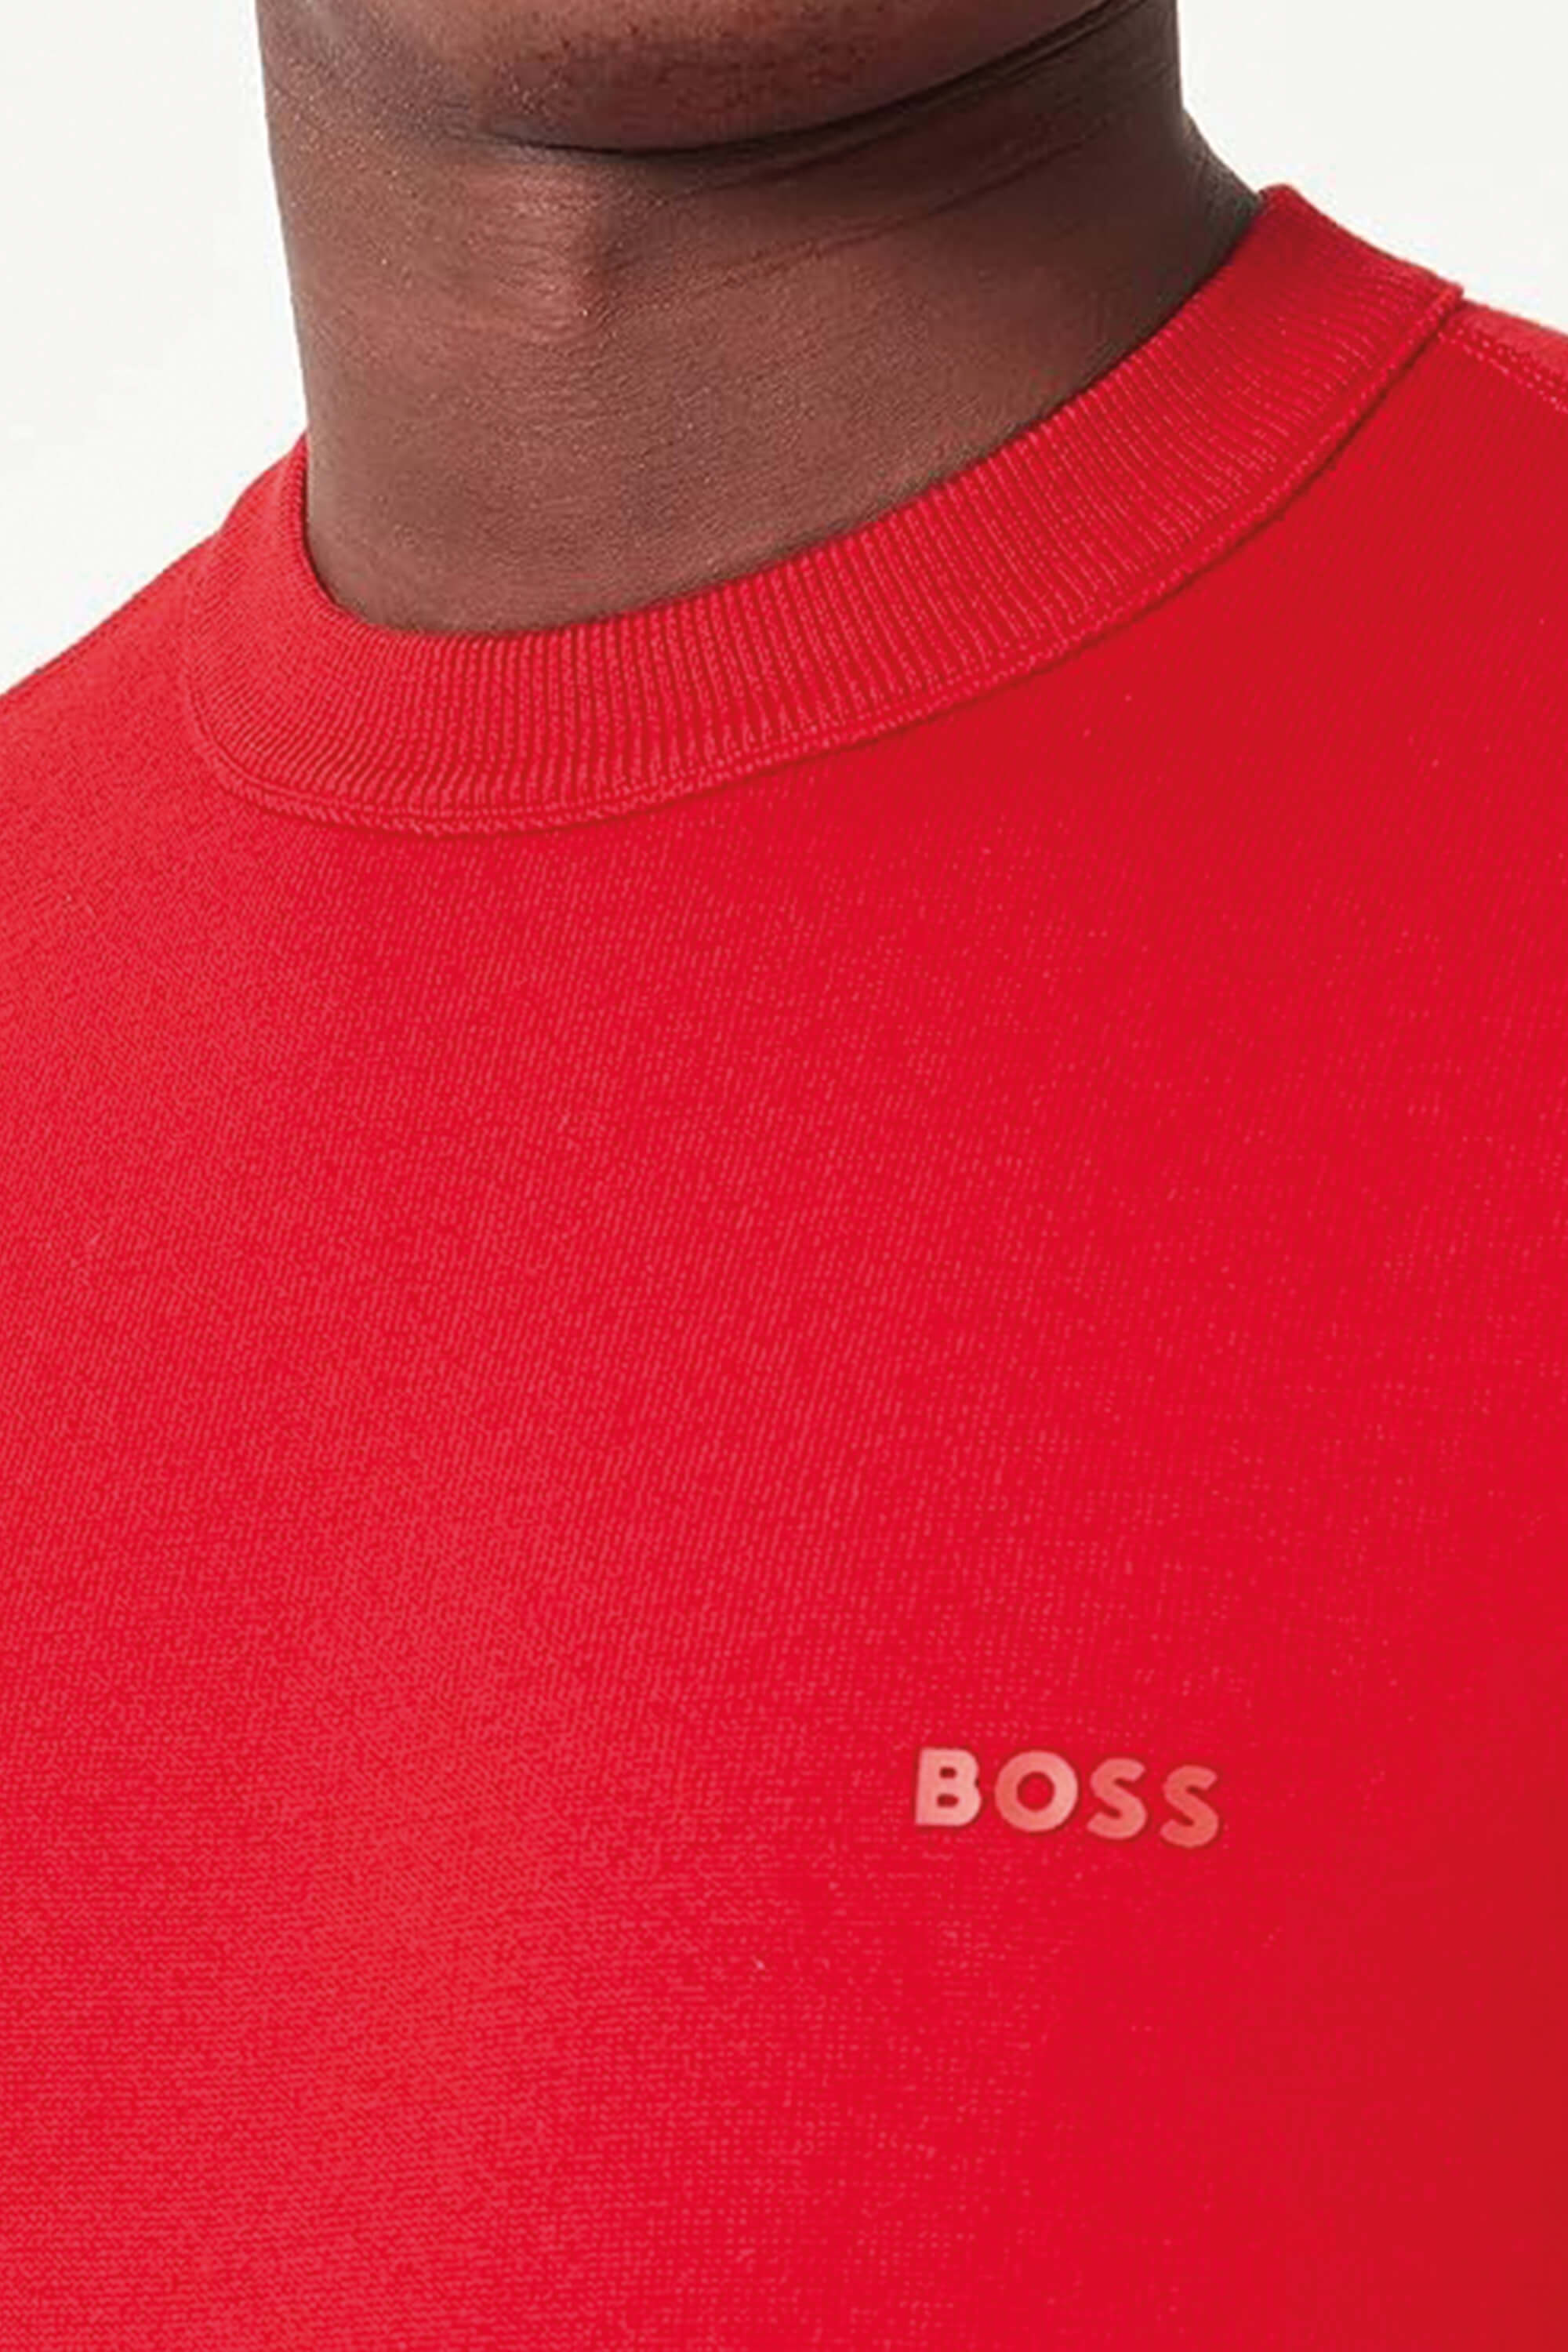 Hugo Boss Amotore Crew Bright Red